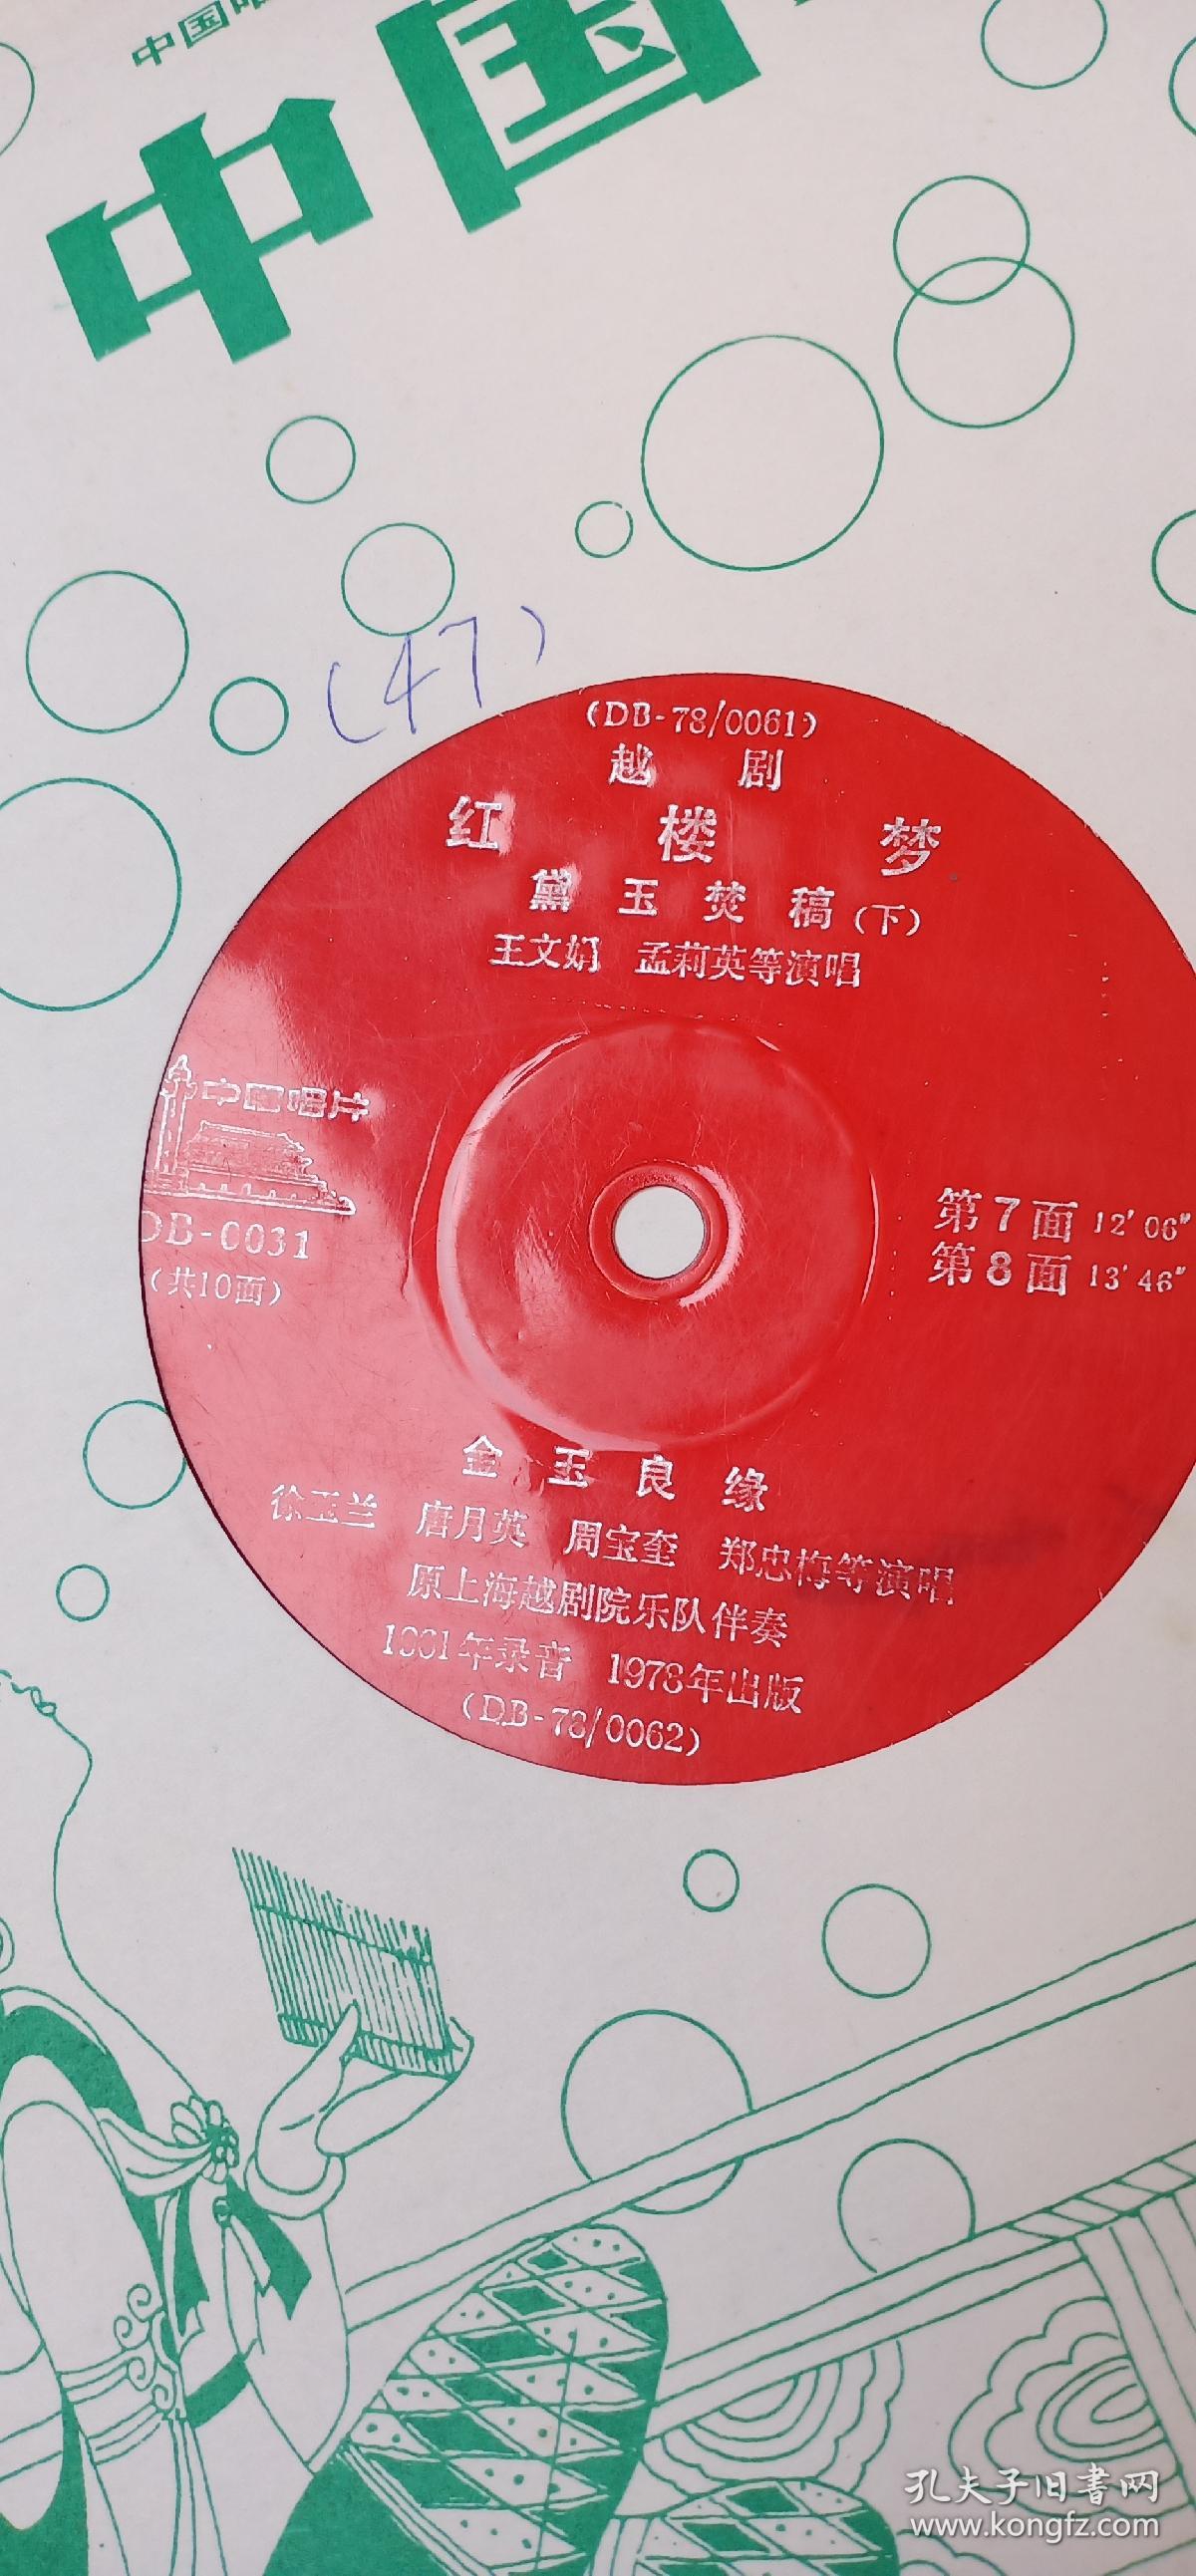 《红楼梦》系列大号薄膜唱片五张。